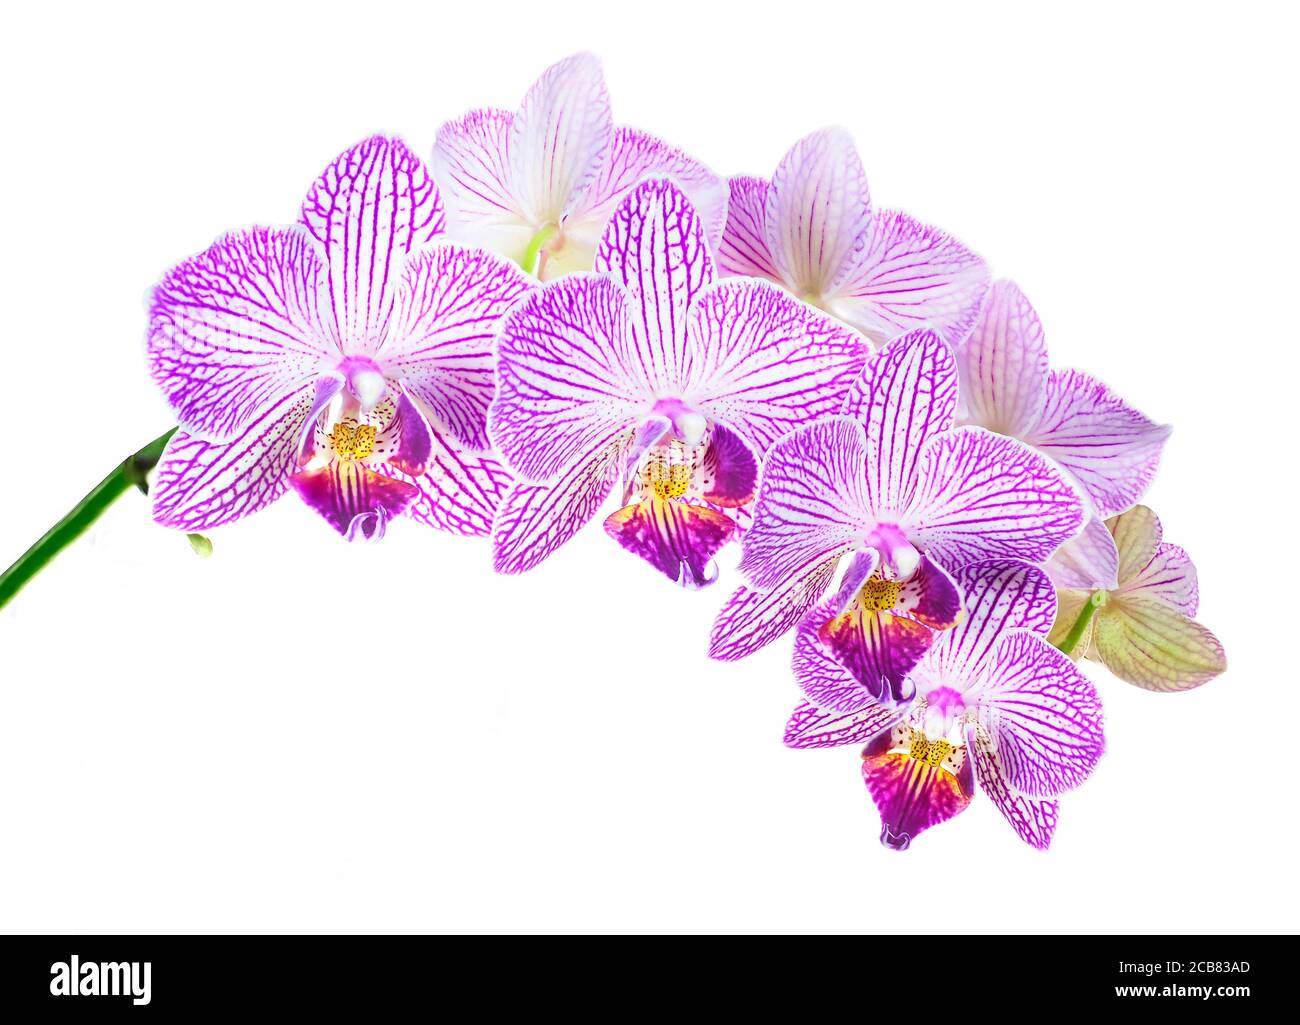 Messa a fuoco impilata Chioseup immagine di Beautiful viola e strisce bianche Orchidee isolate su bianco Foto Stock